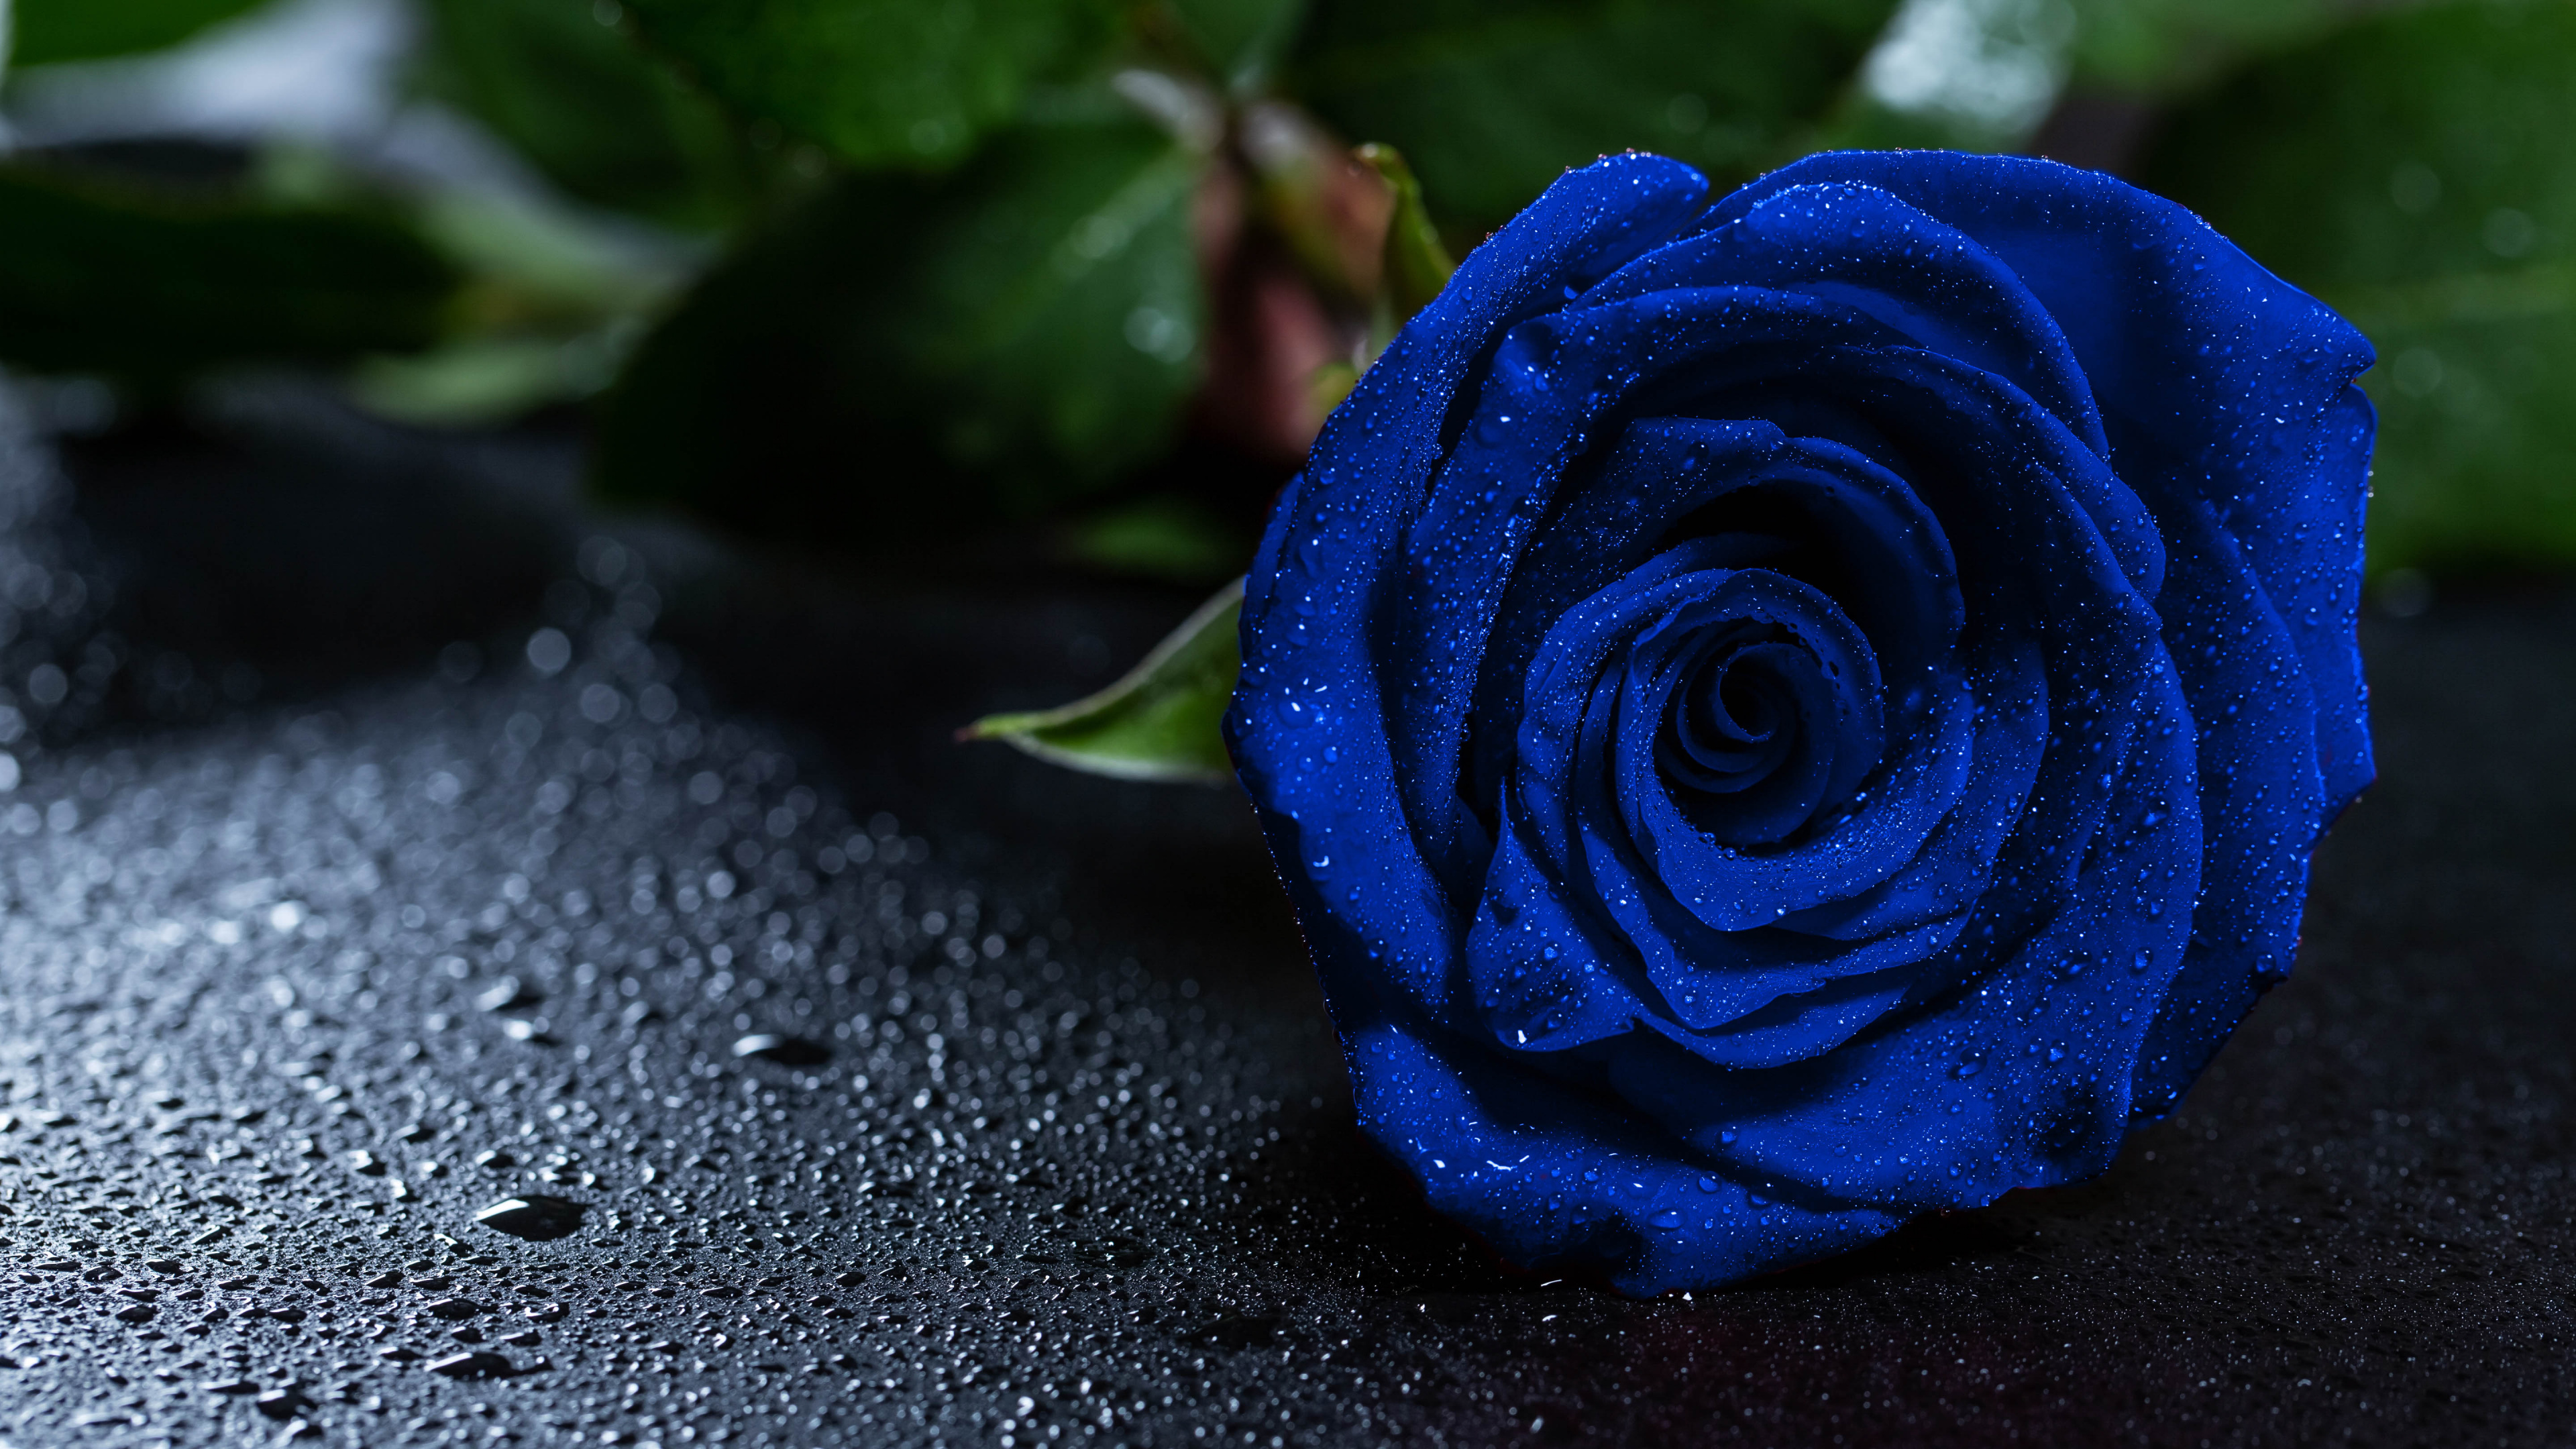 蓝玫瑰, 显花植物, 玫瑰花园, 钴蓝色的, 玫瑰家庭 壁纸 3840x2160 允许